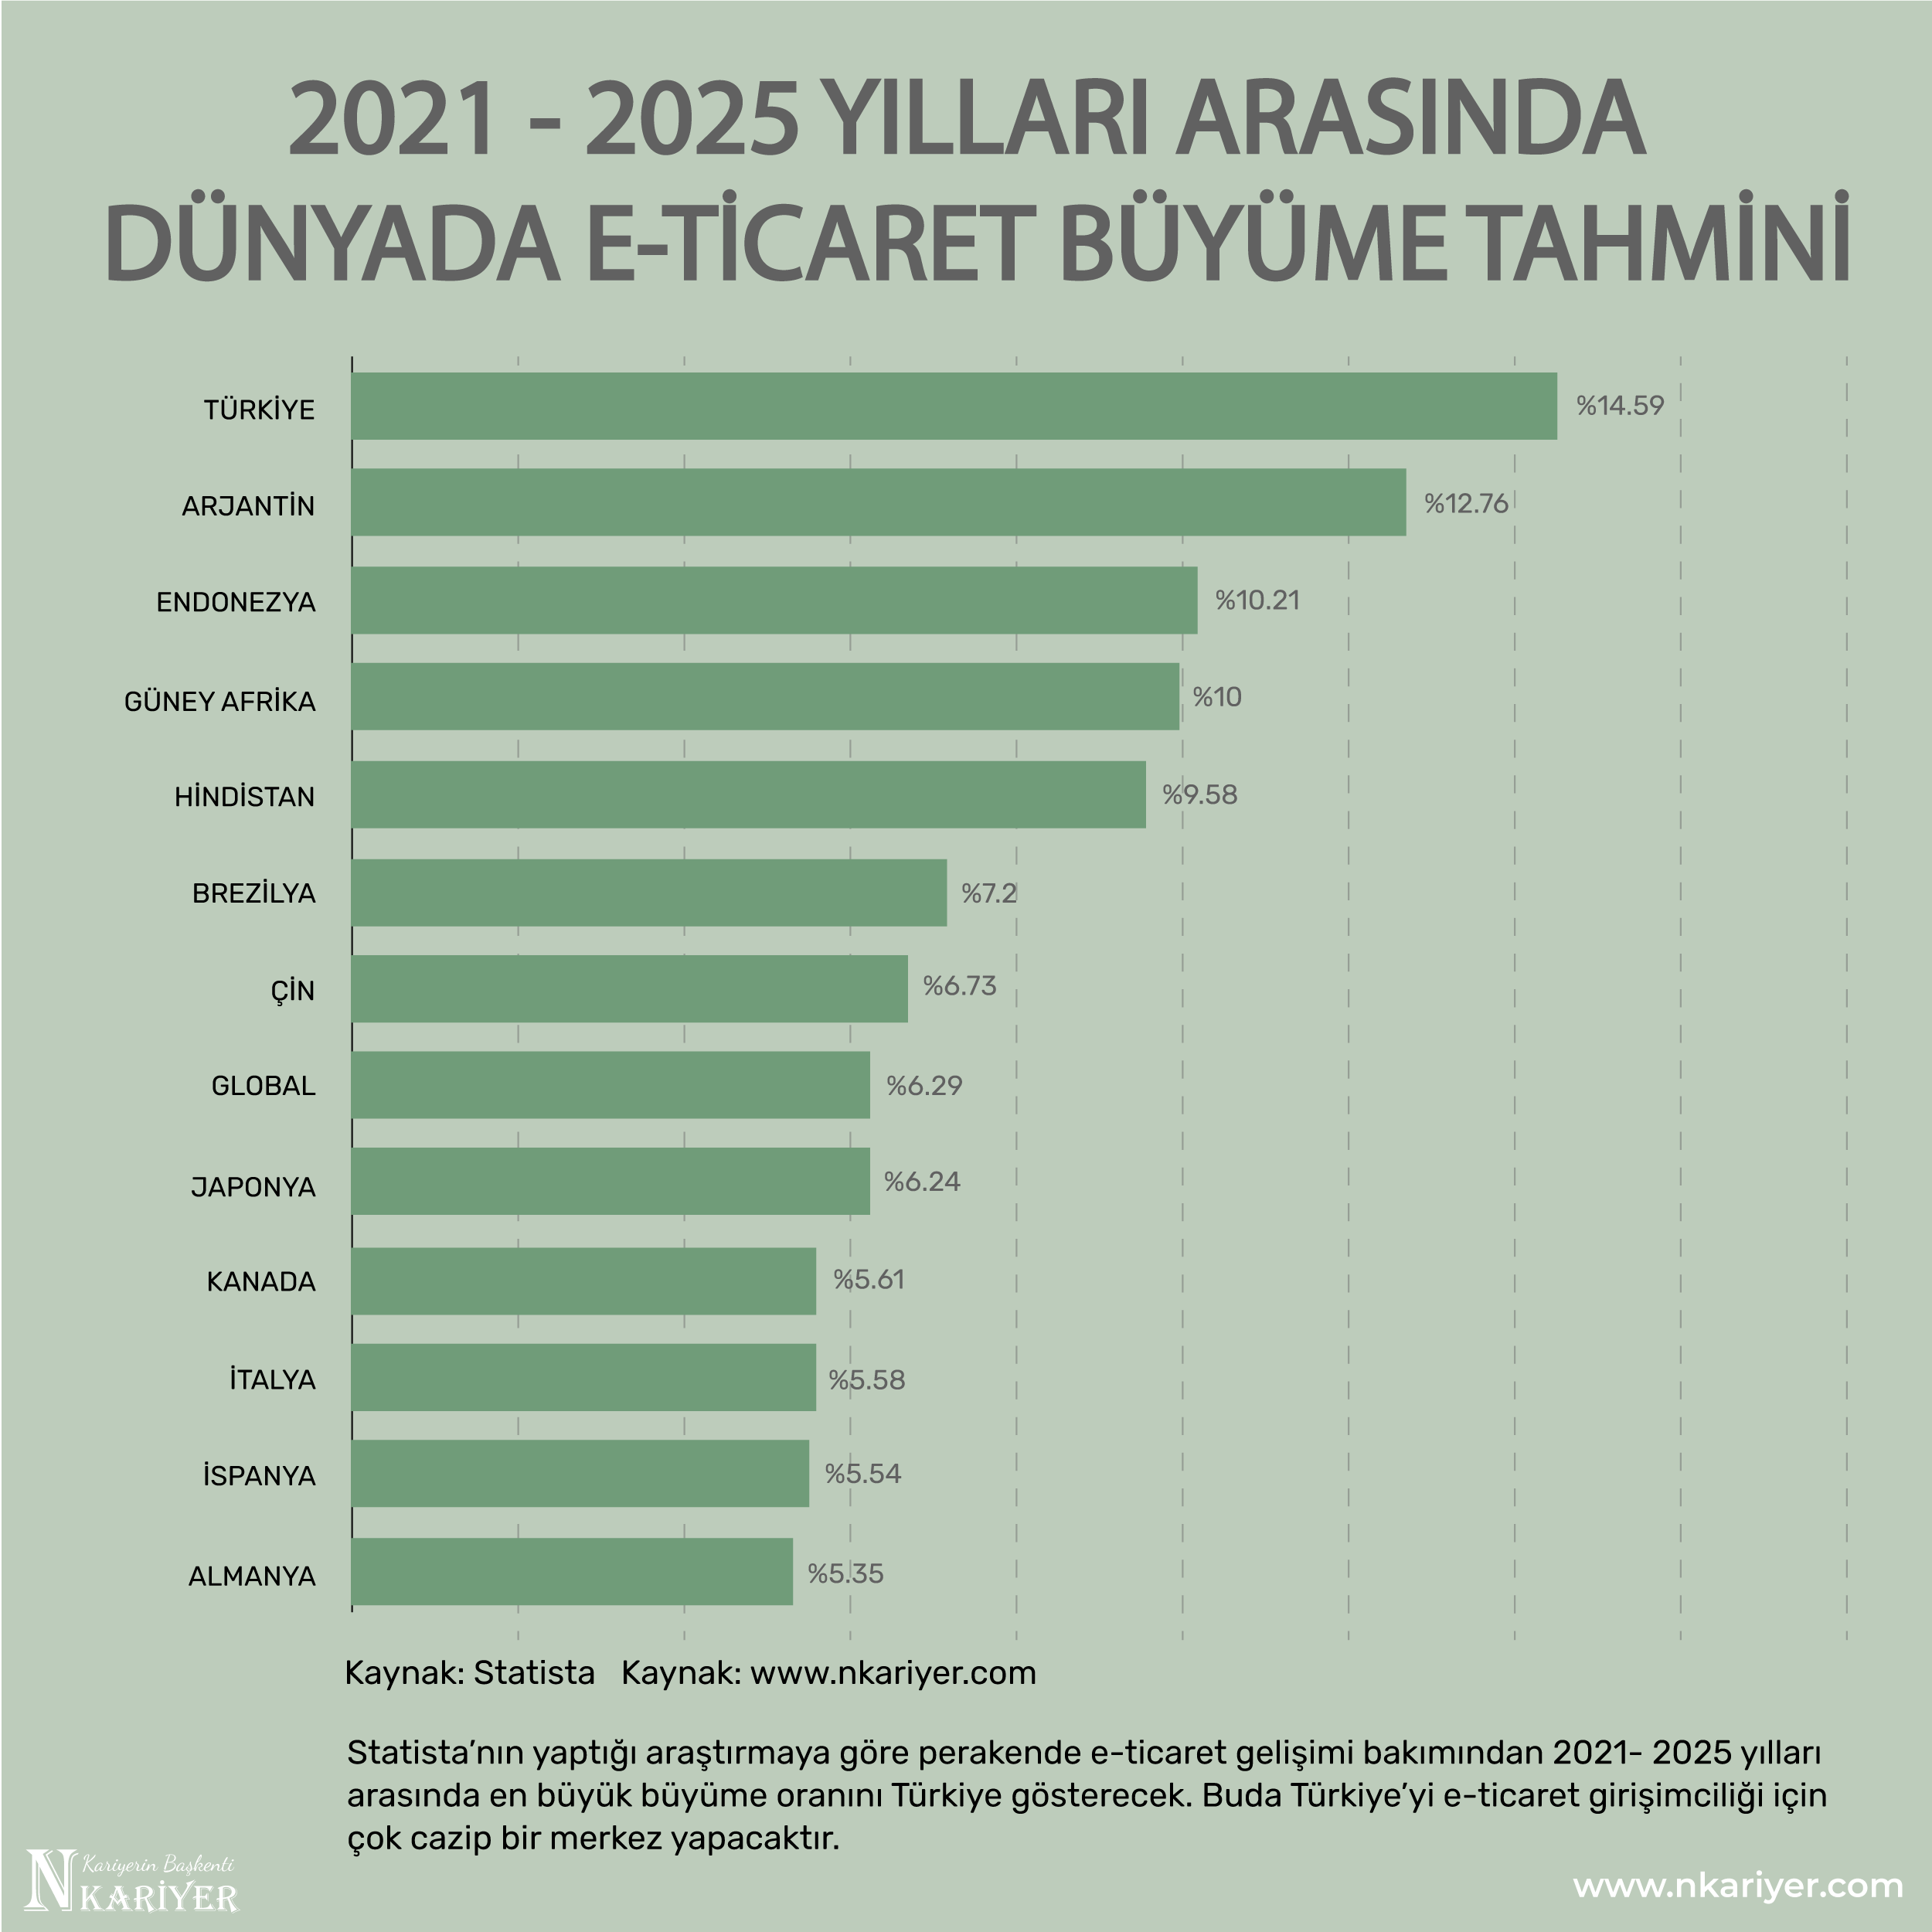 E-ticaret büyüme hızı 2021 – 2025 yılları arasında en yüksek Türkiye’de olacak!